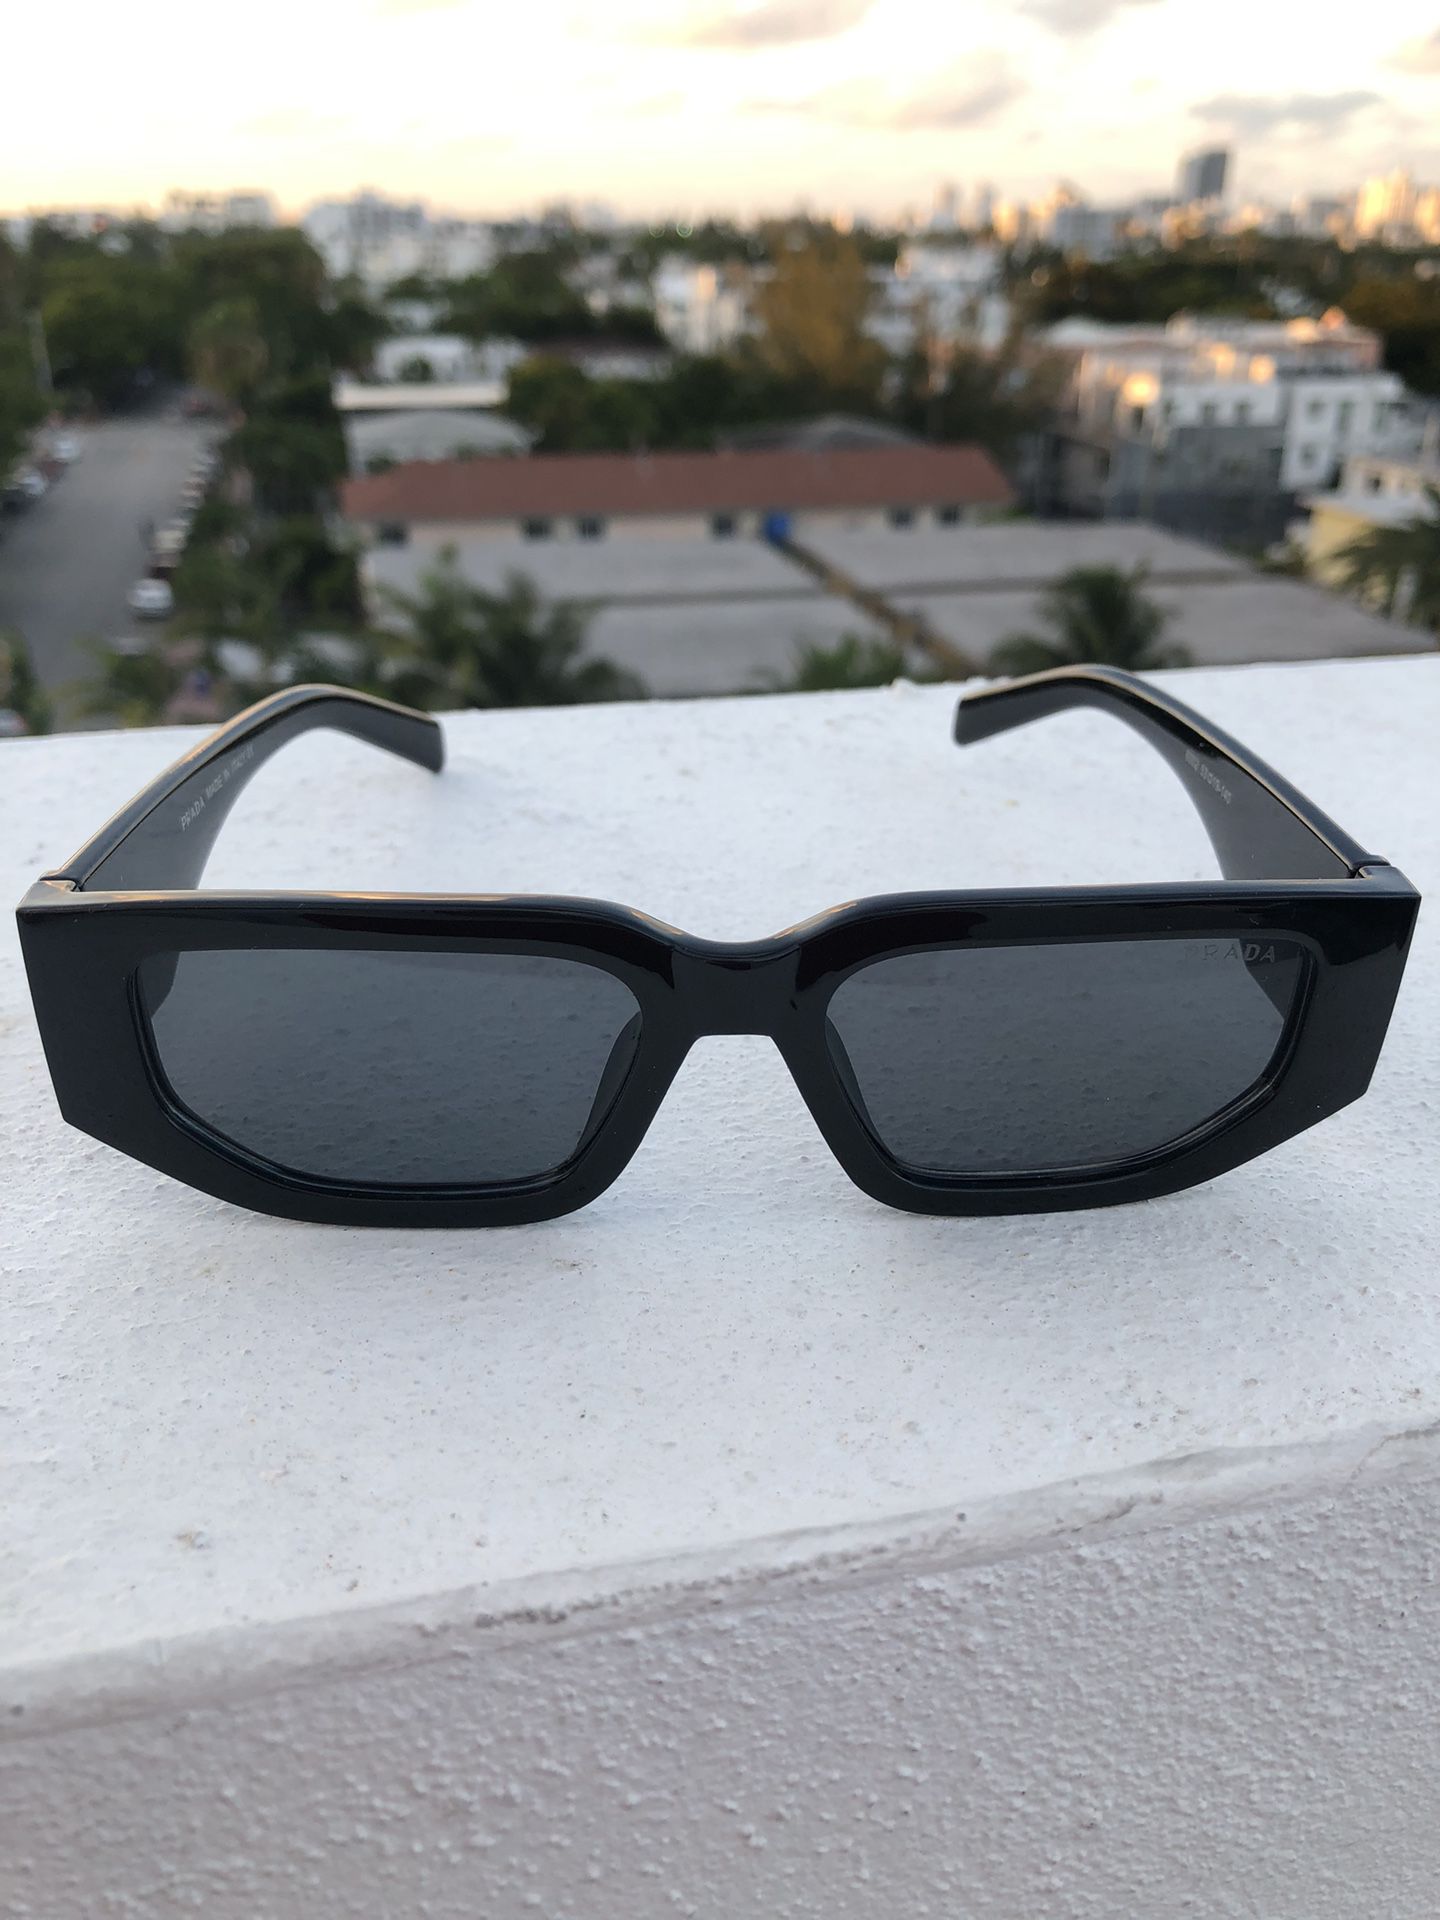 Prada New Sunglasses